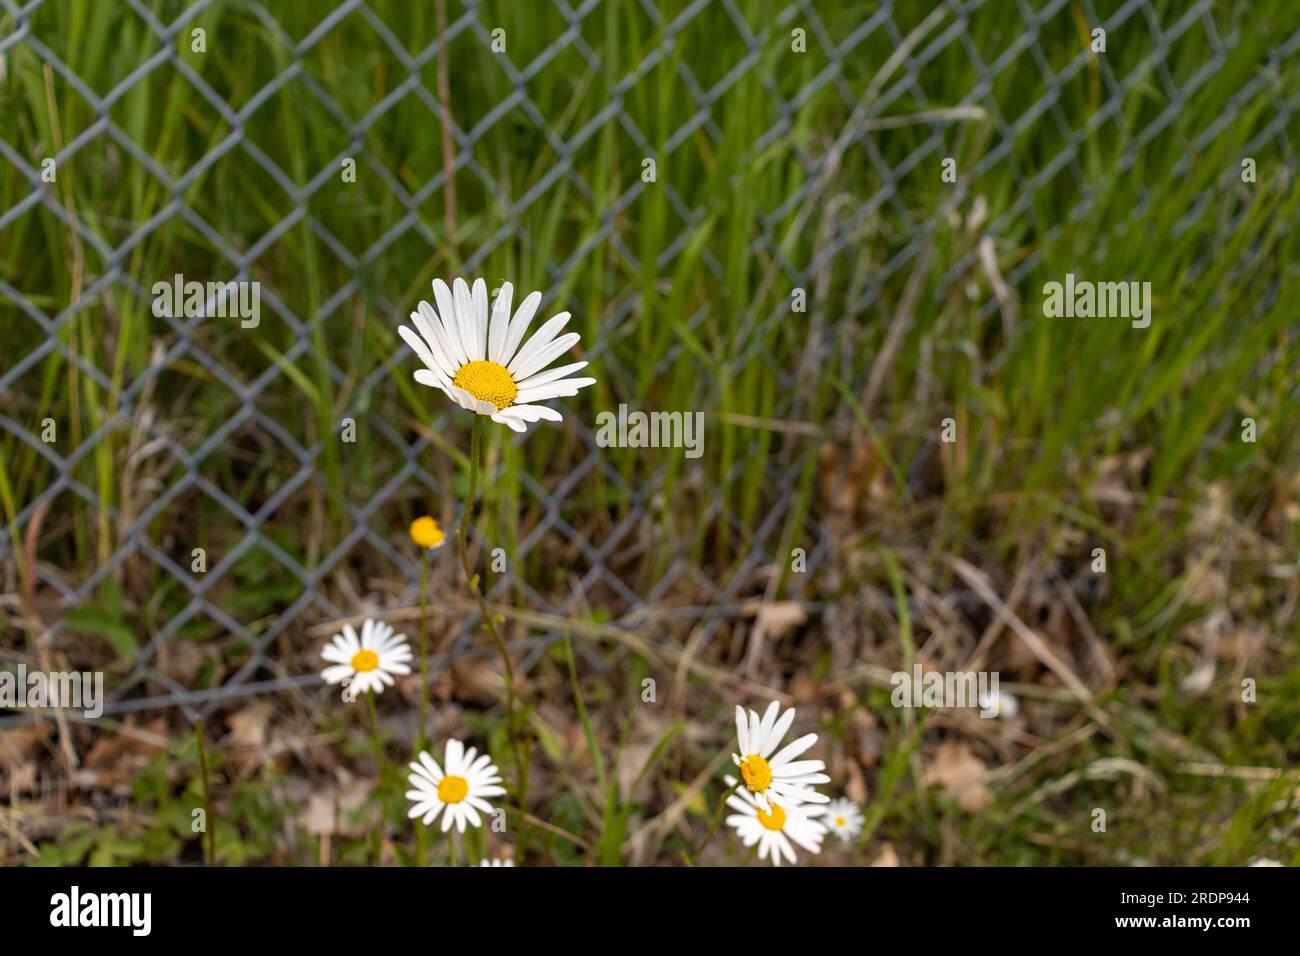 Gänseblümchen-Kettenzaun – weiße Blütenblätter, gelbe Mitte – Metallzaun, Gras, verschwommener Hintergrund Stockfoto